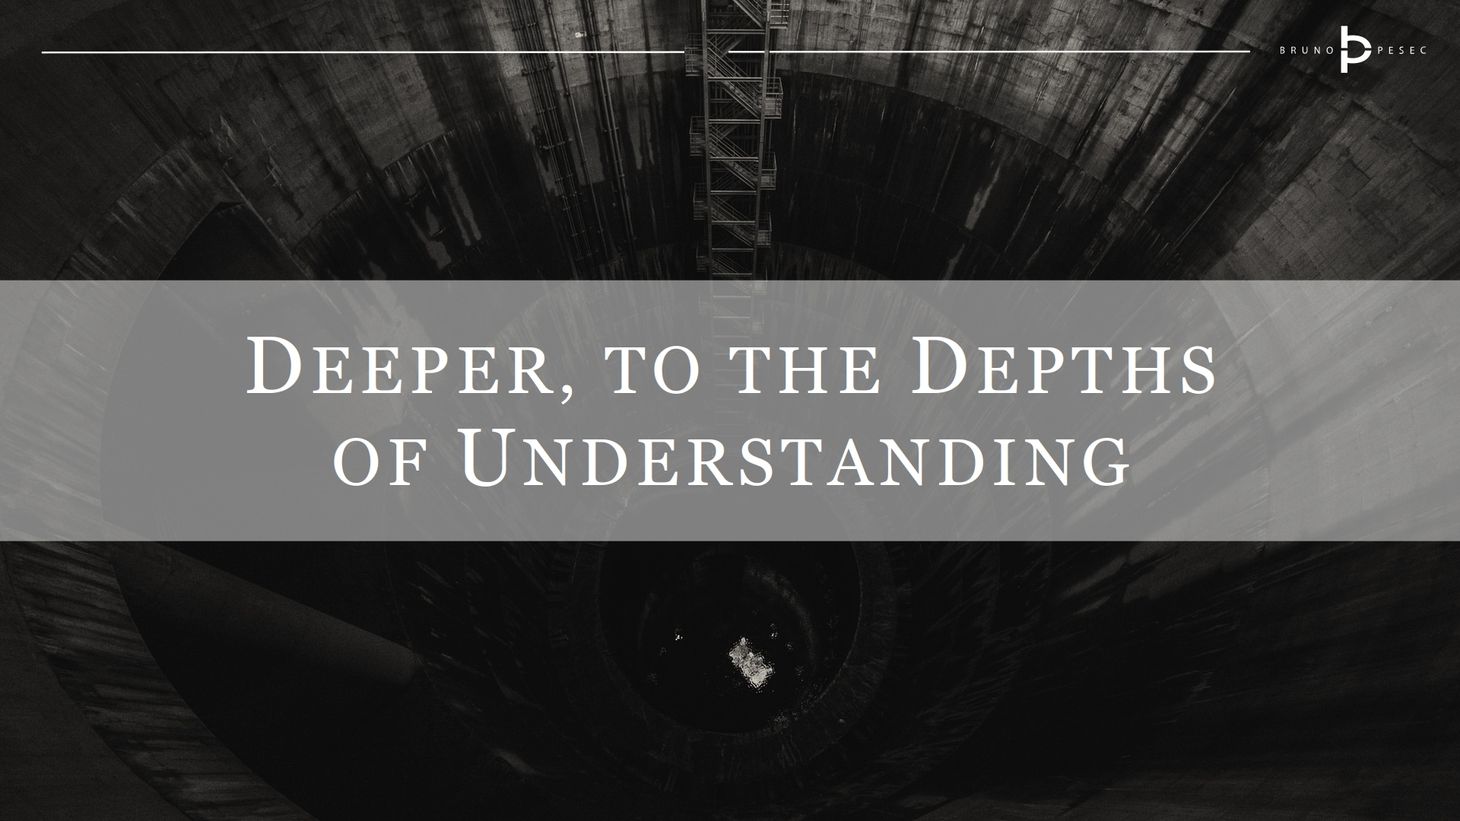 Deeper, to the depths of understanding